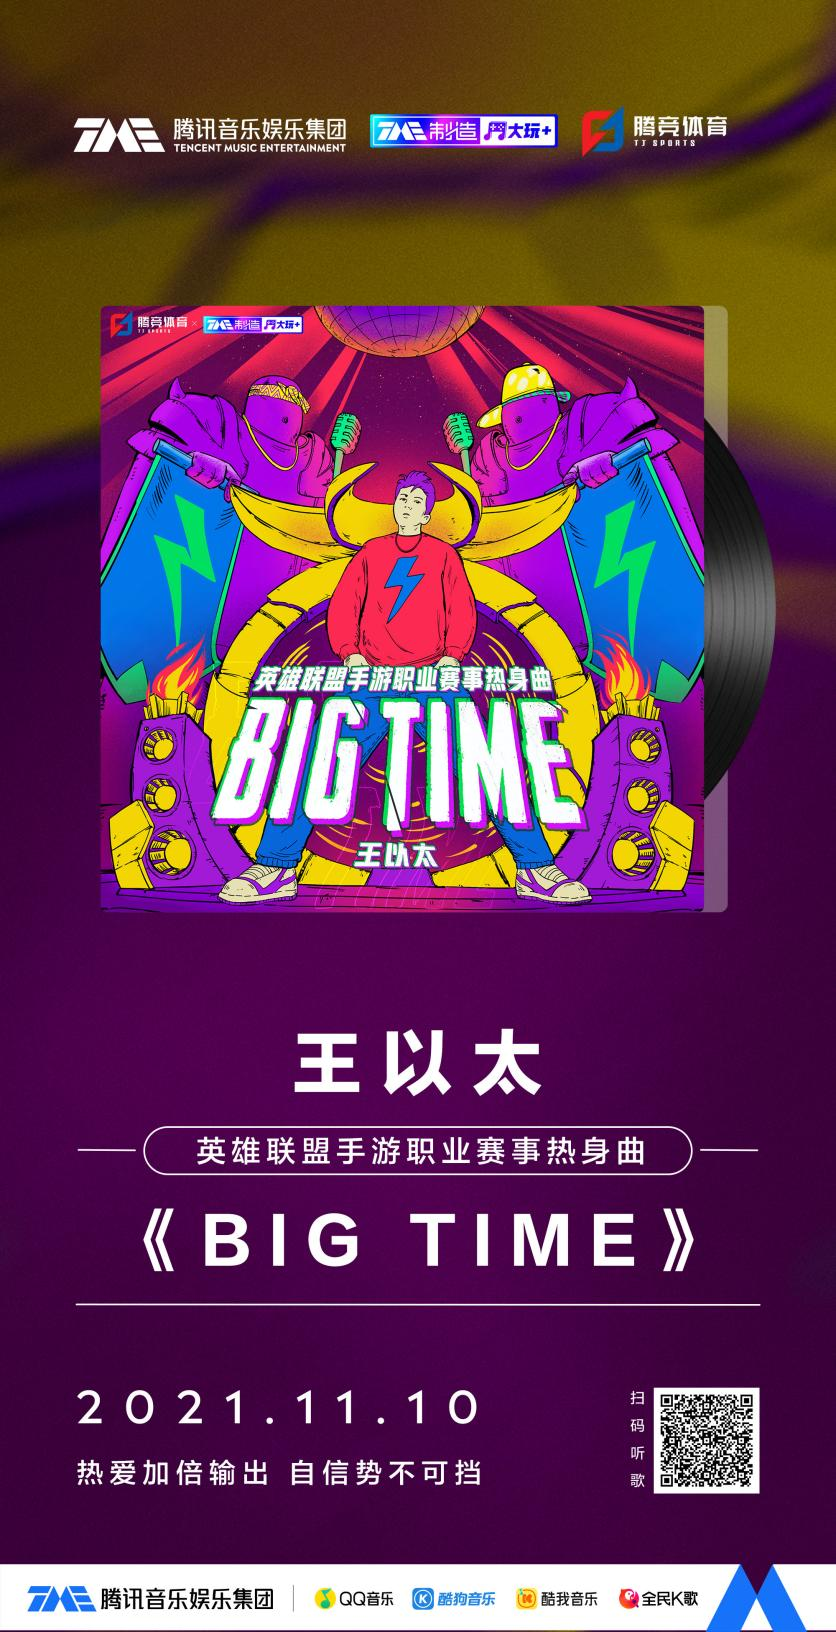 腾讯音乐娱乐集团携手英雄联盟手游赛事举办音乐创作营活动 首发曲《BIG TIME》正式上线